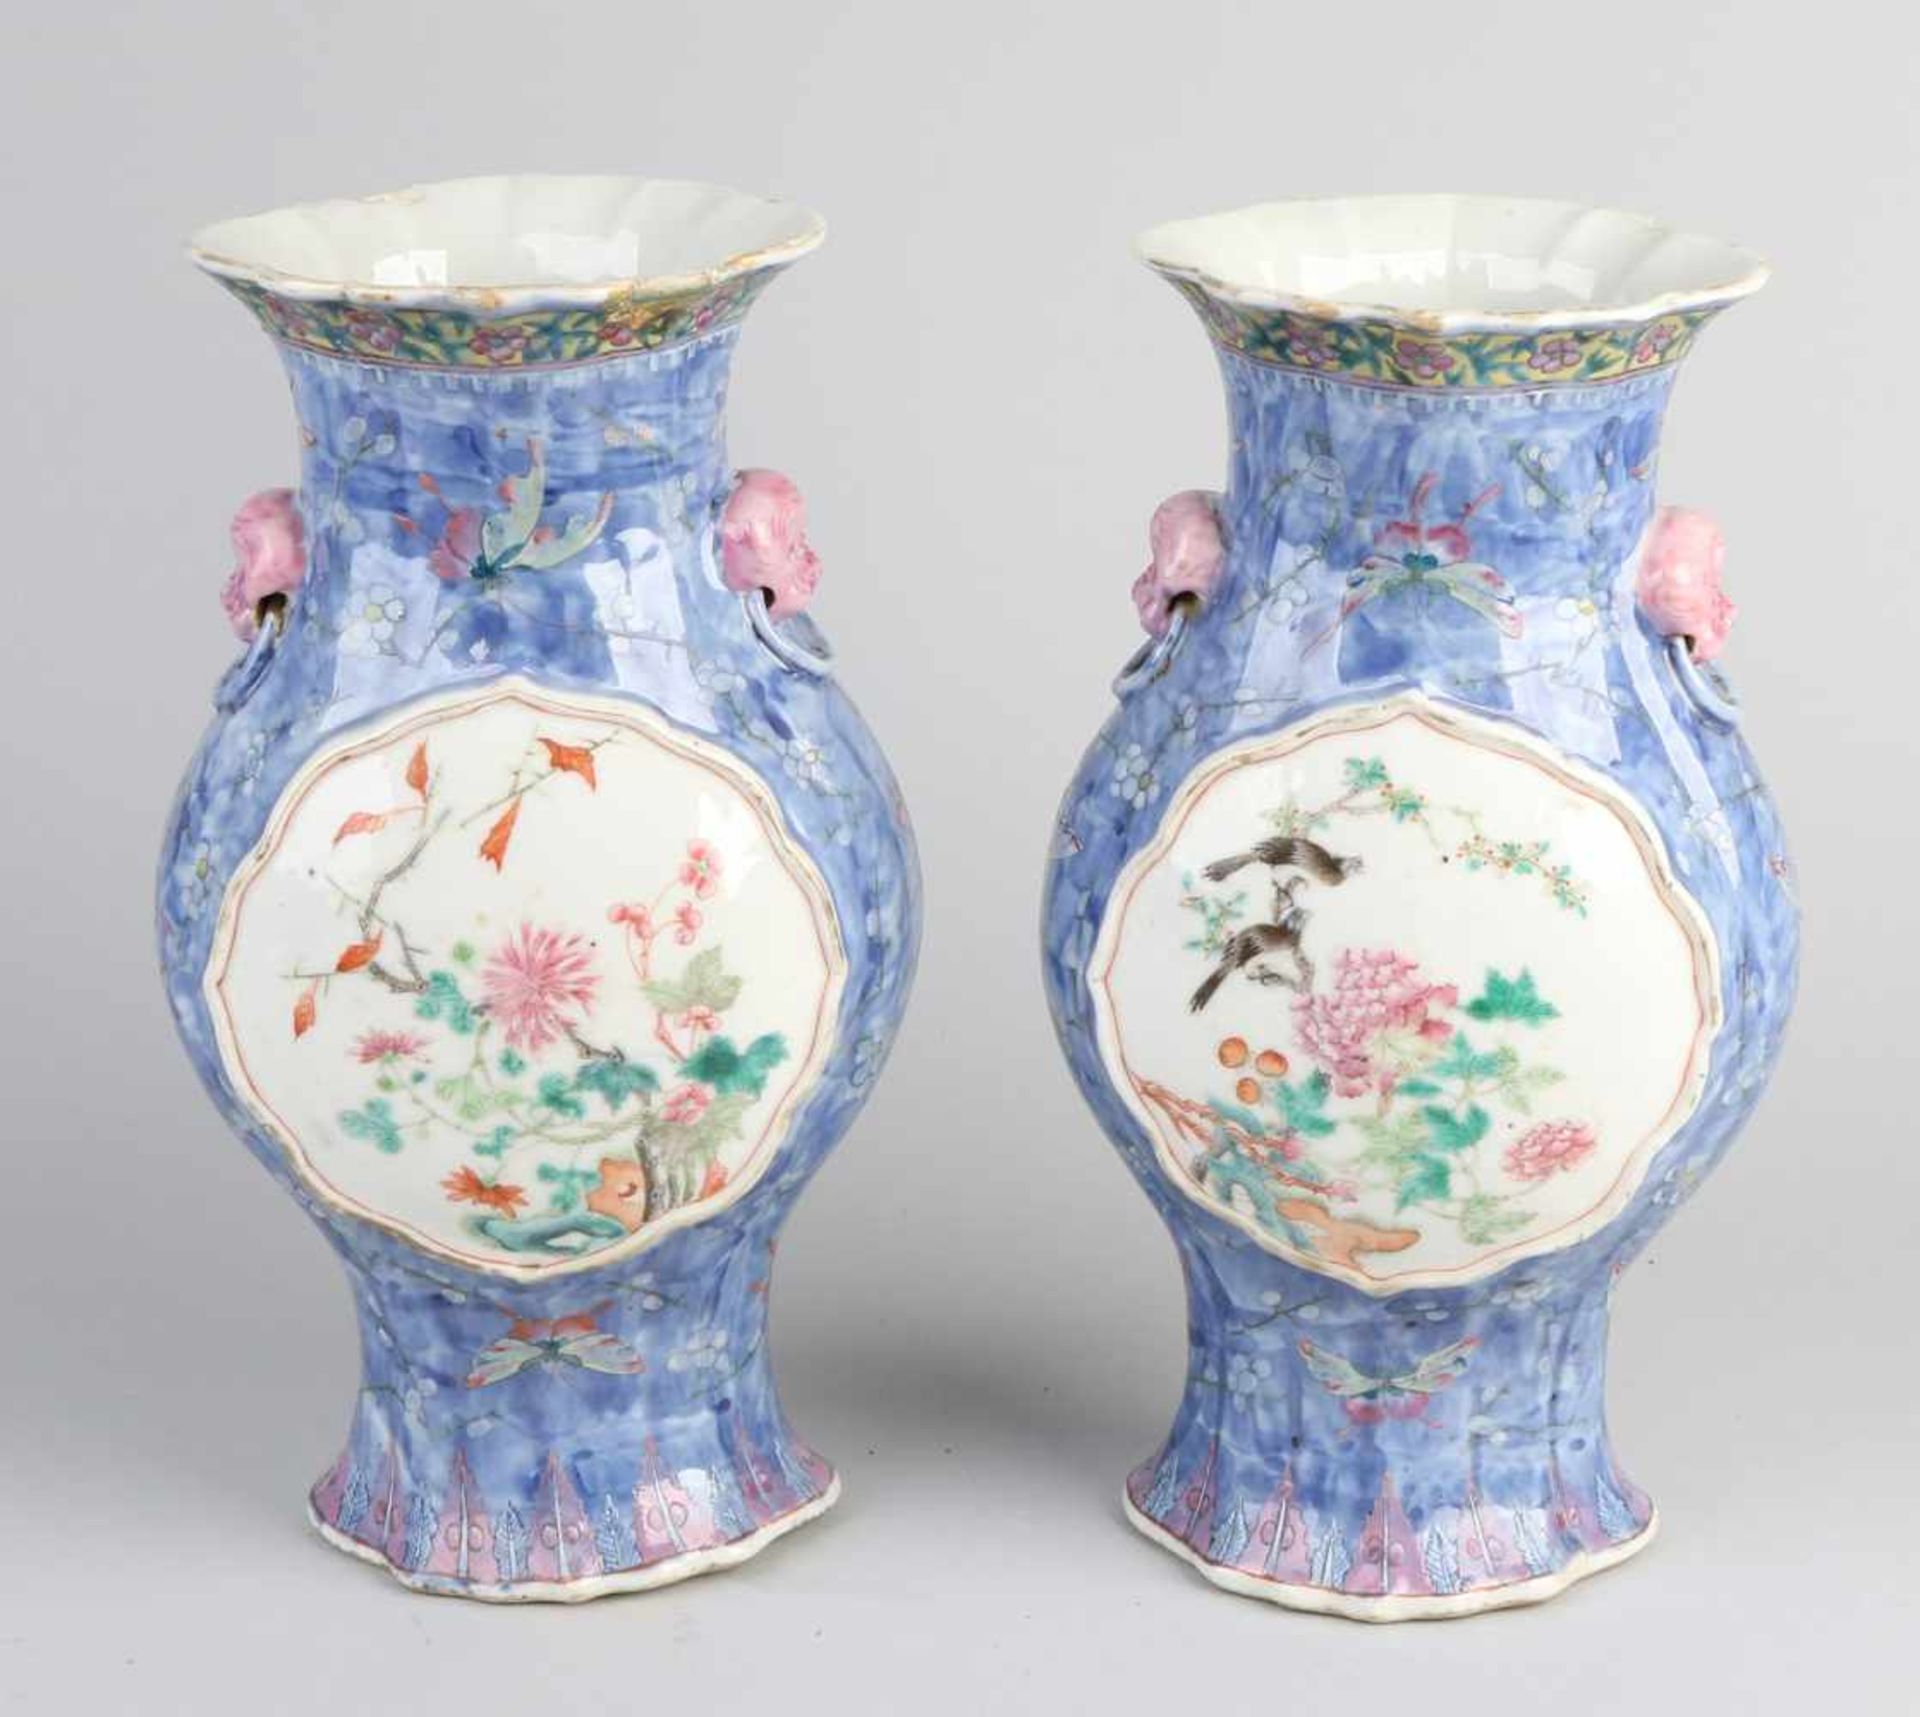 Zwei chinesische Porzellan-Familienvasen aus Porzellan aus dem 18. - 19. Jahrhundert mit